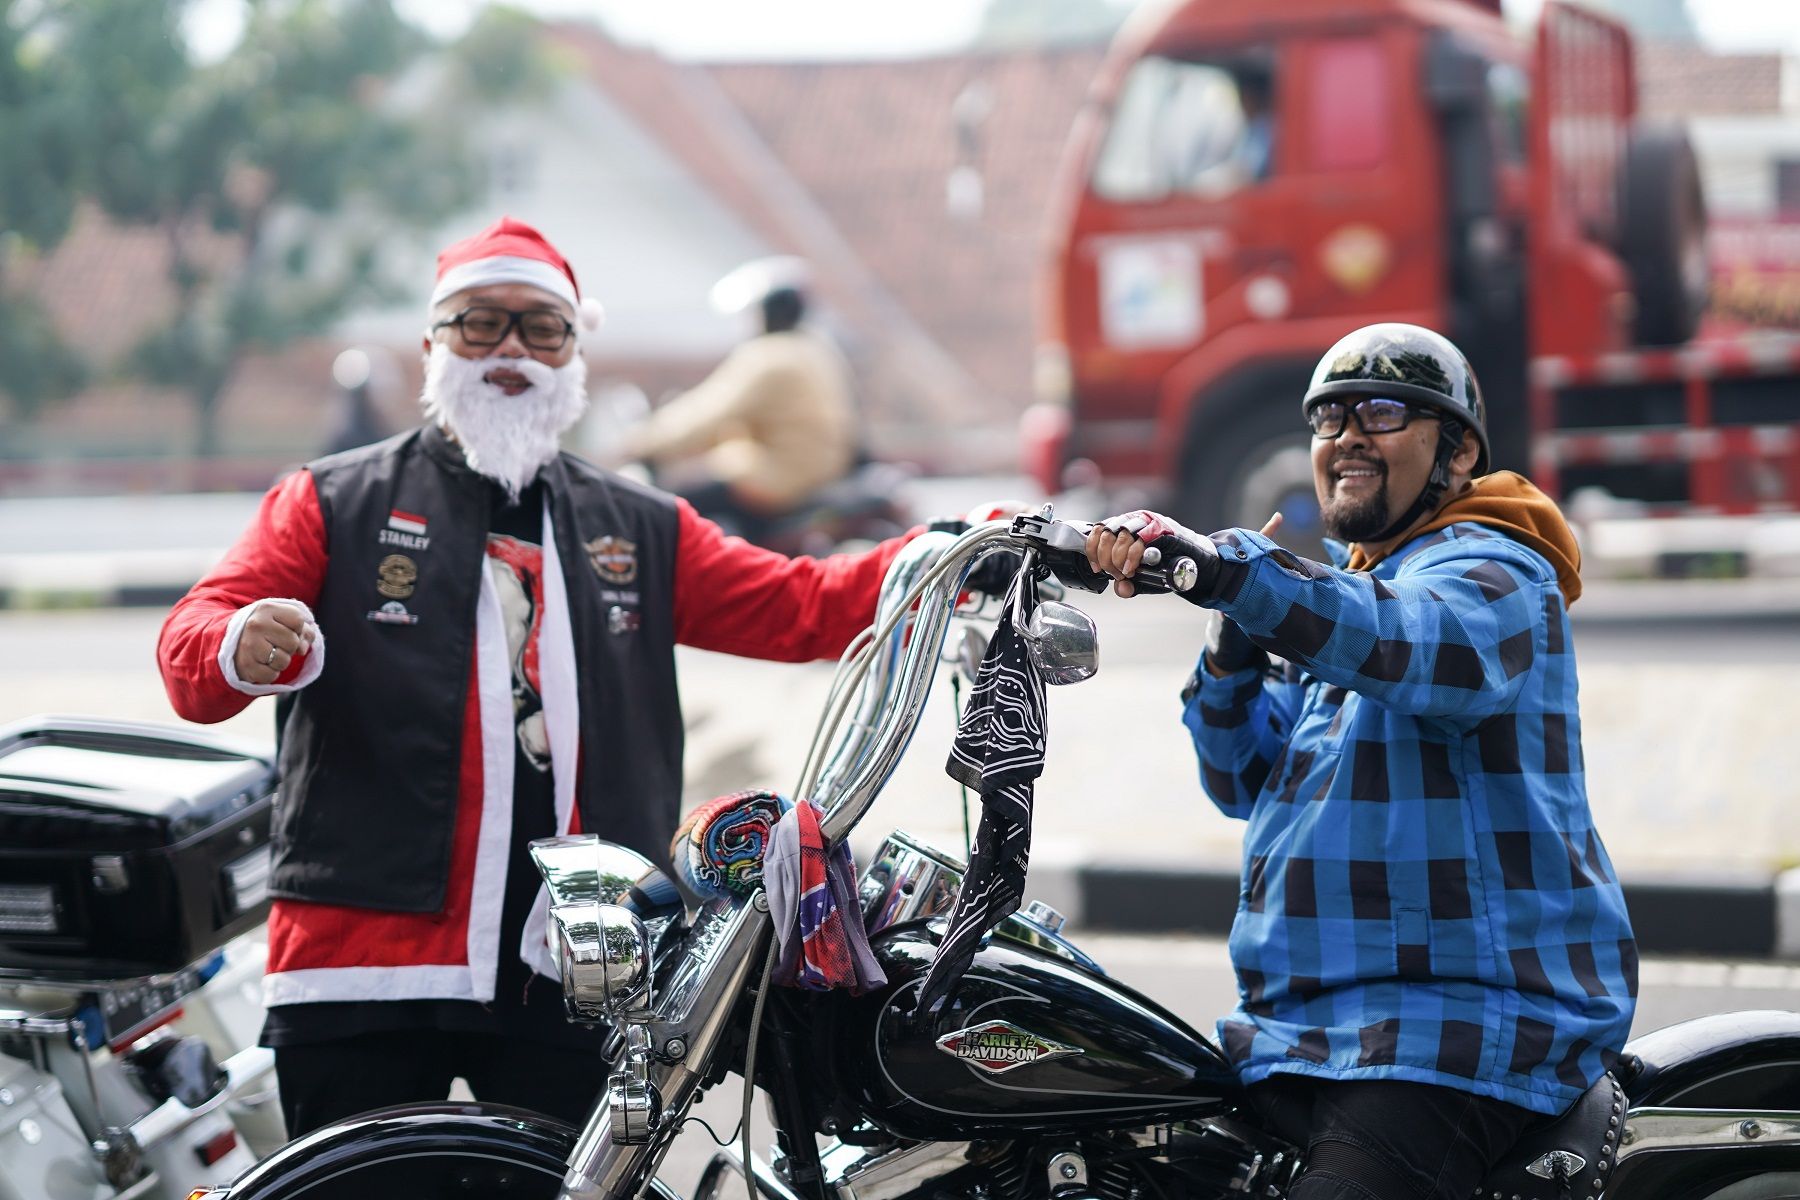 Beberapa anggota HDCI Bandung juga tampak mengenakan kostum sinterklas dan mengendarai unit Harley-Davidson./  